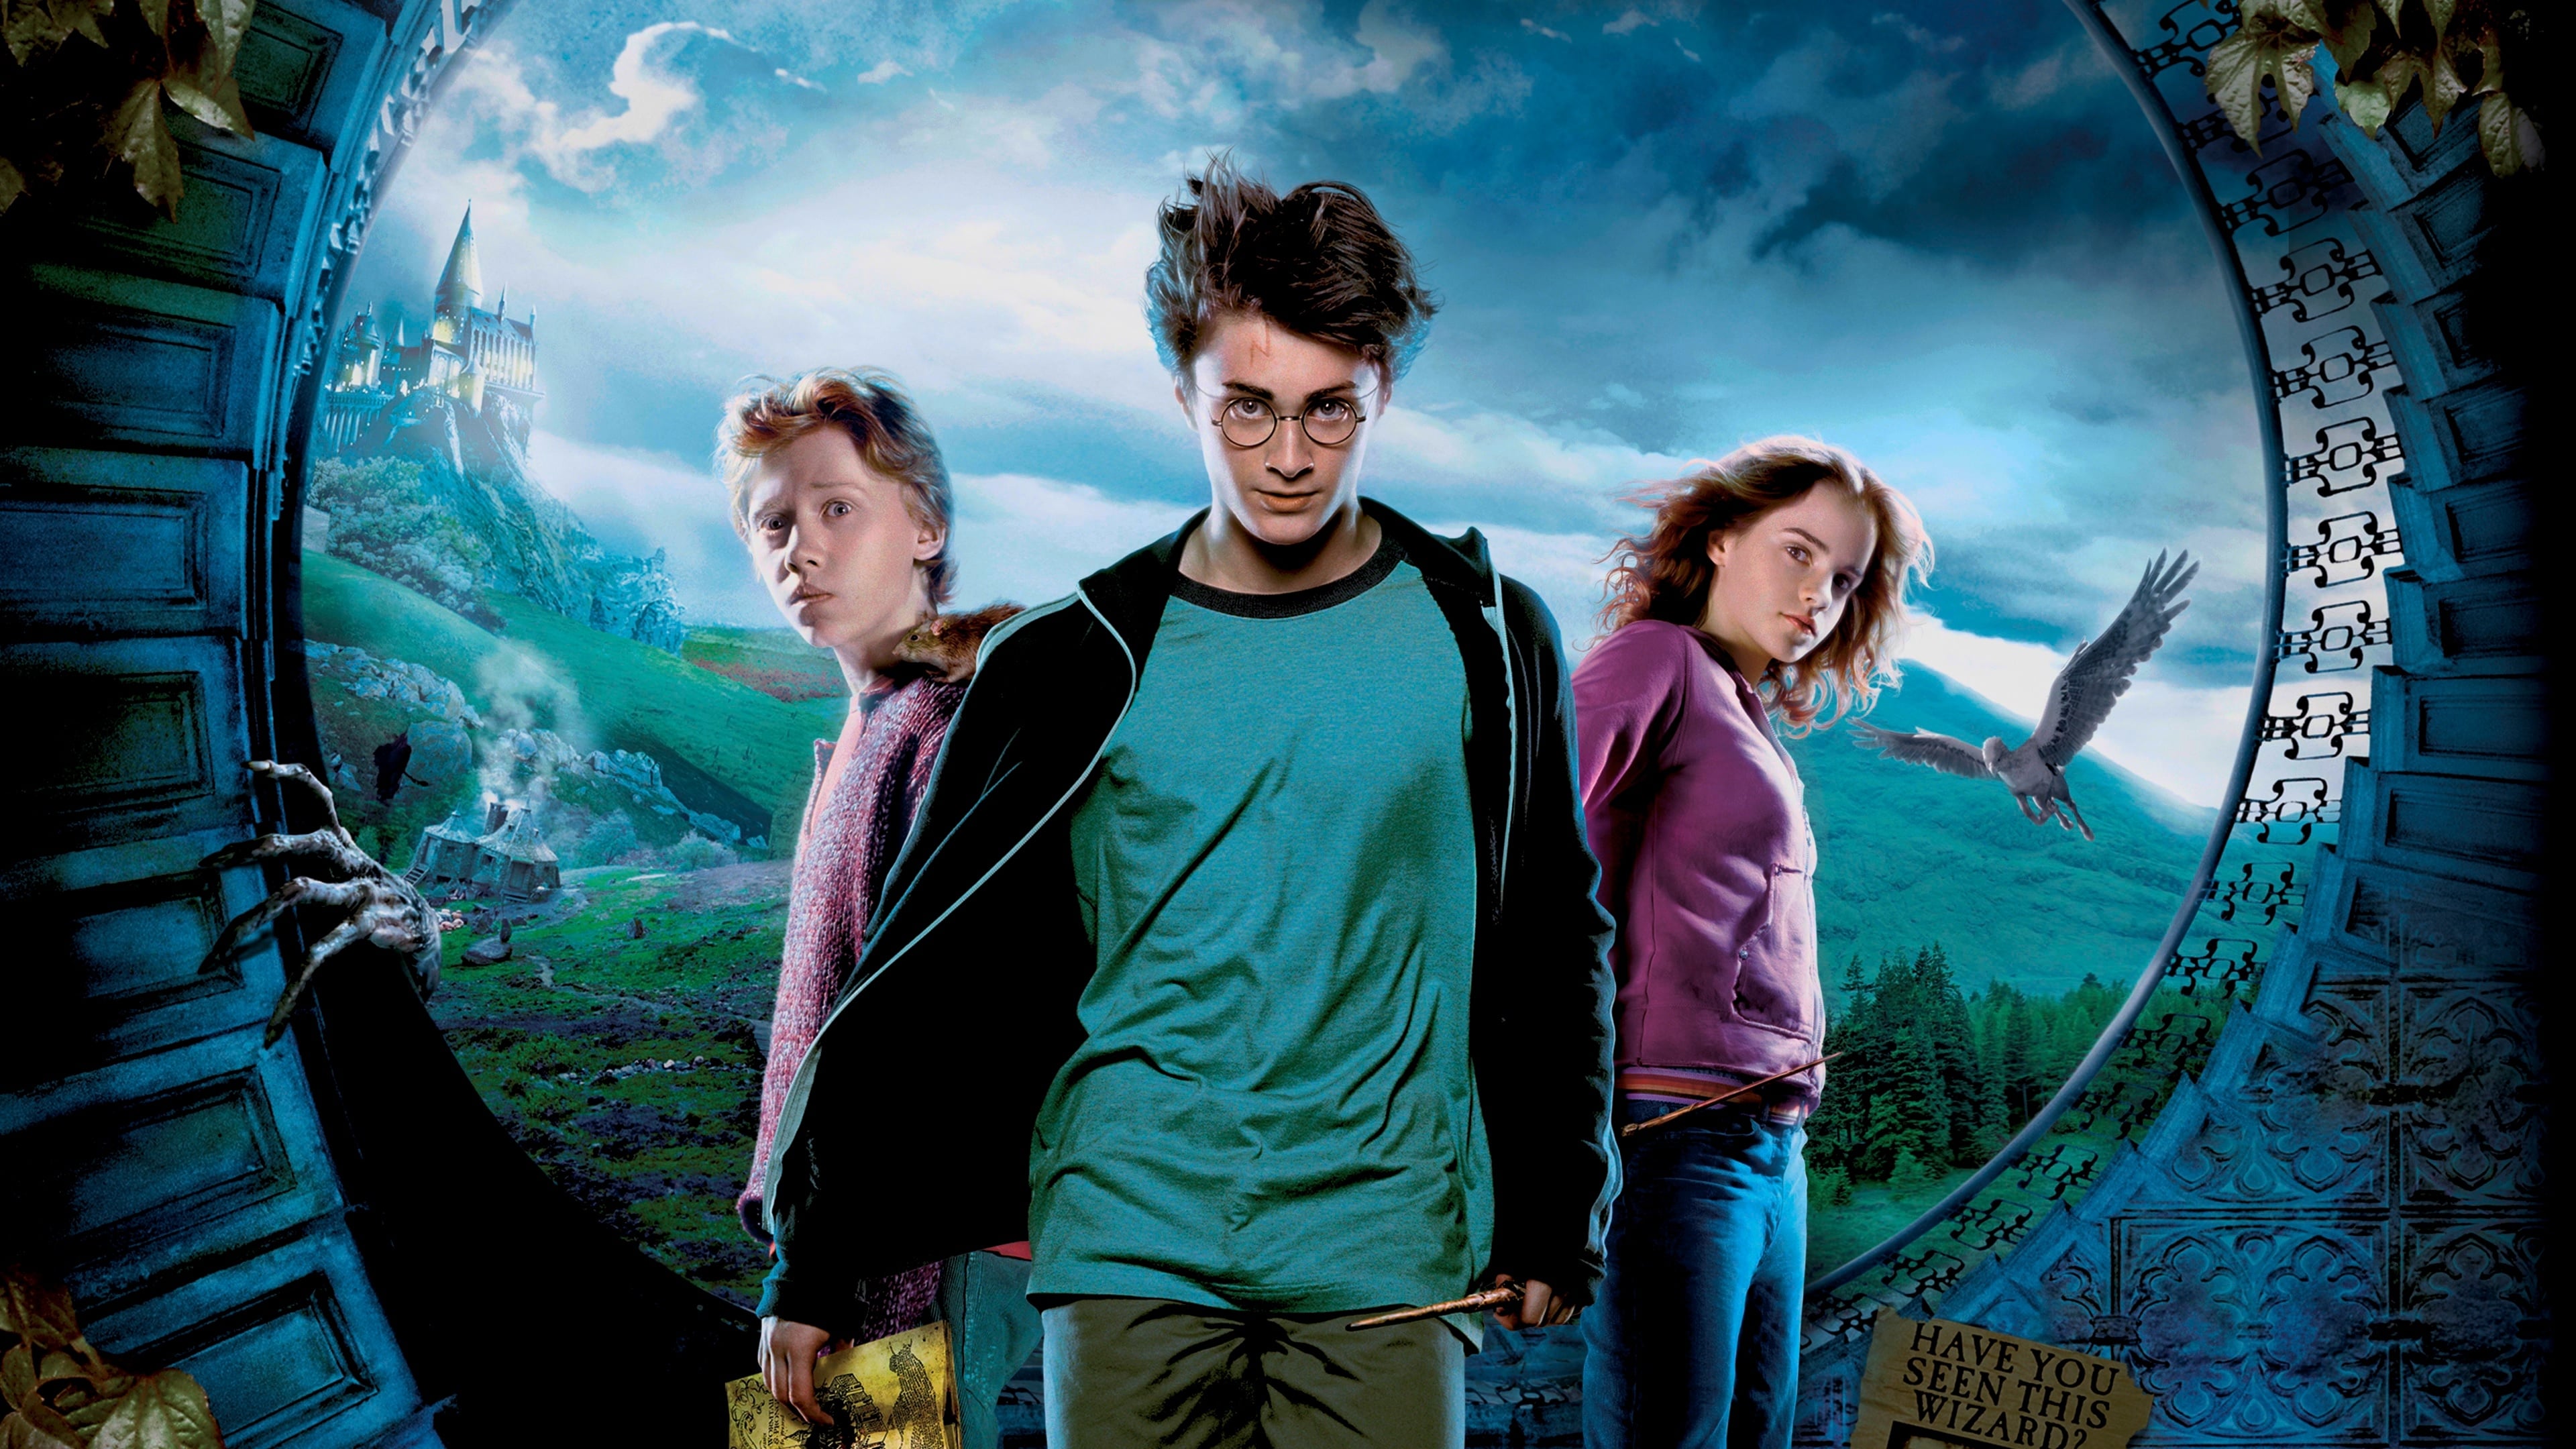 re-pelis.com - Harry Potter y el prisionero de Azkaban